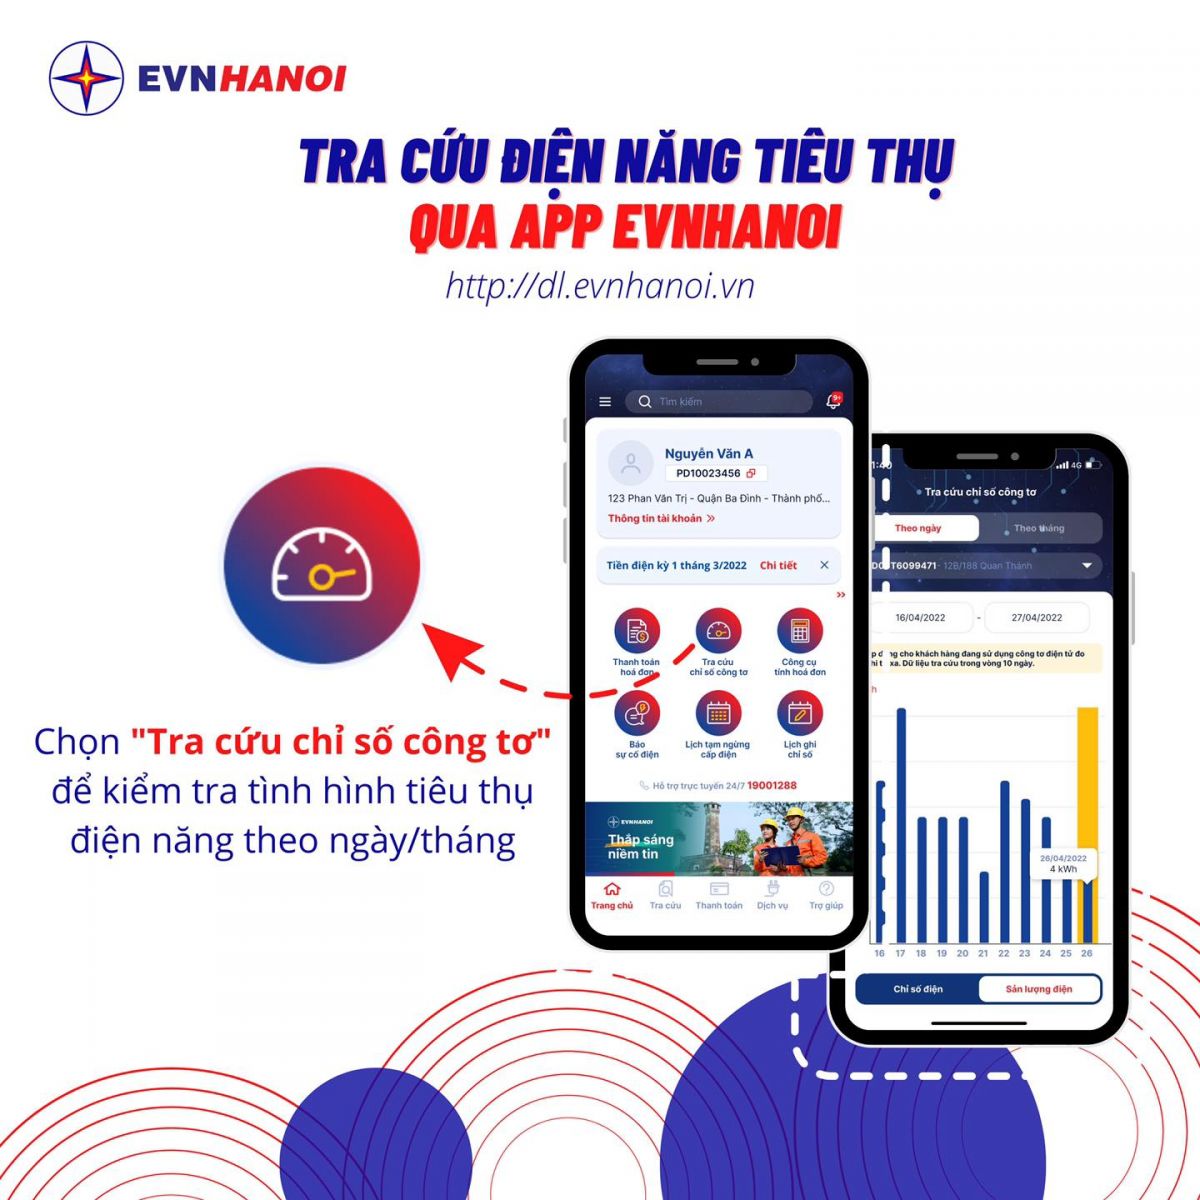 Tra cứu điện năng tiêu thụ qua App EVNHANOI trong tháng một cách dễ dàng, nhanh chóng.